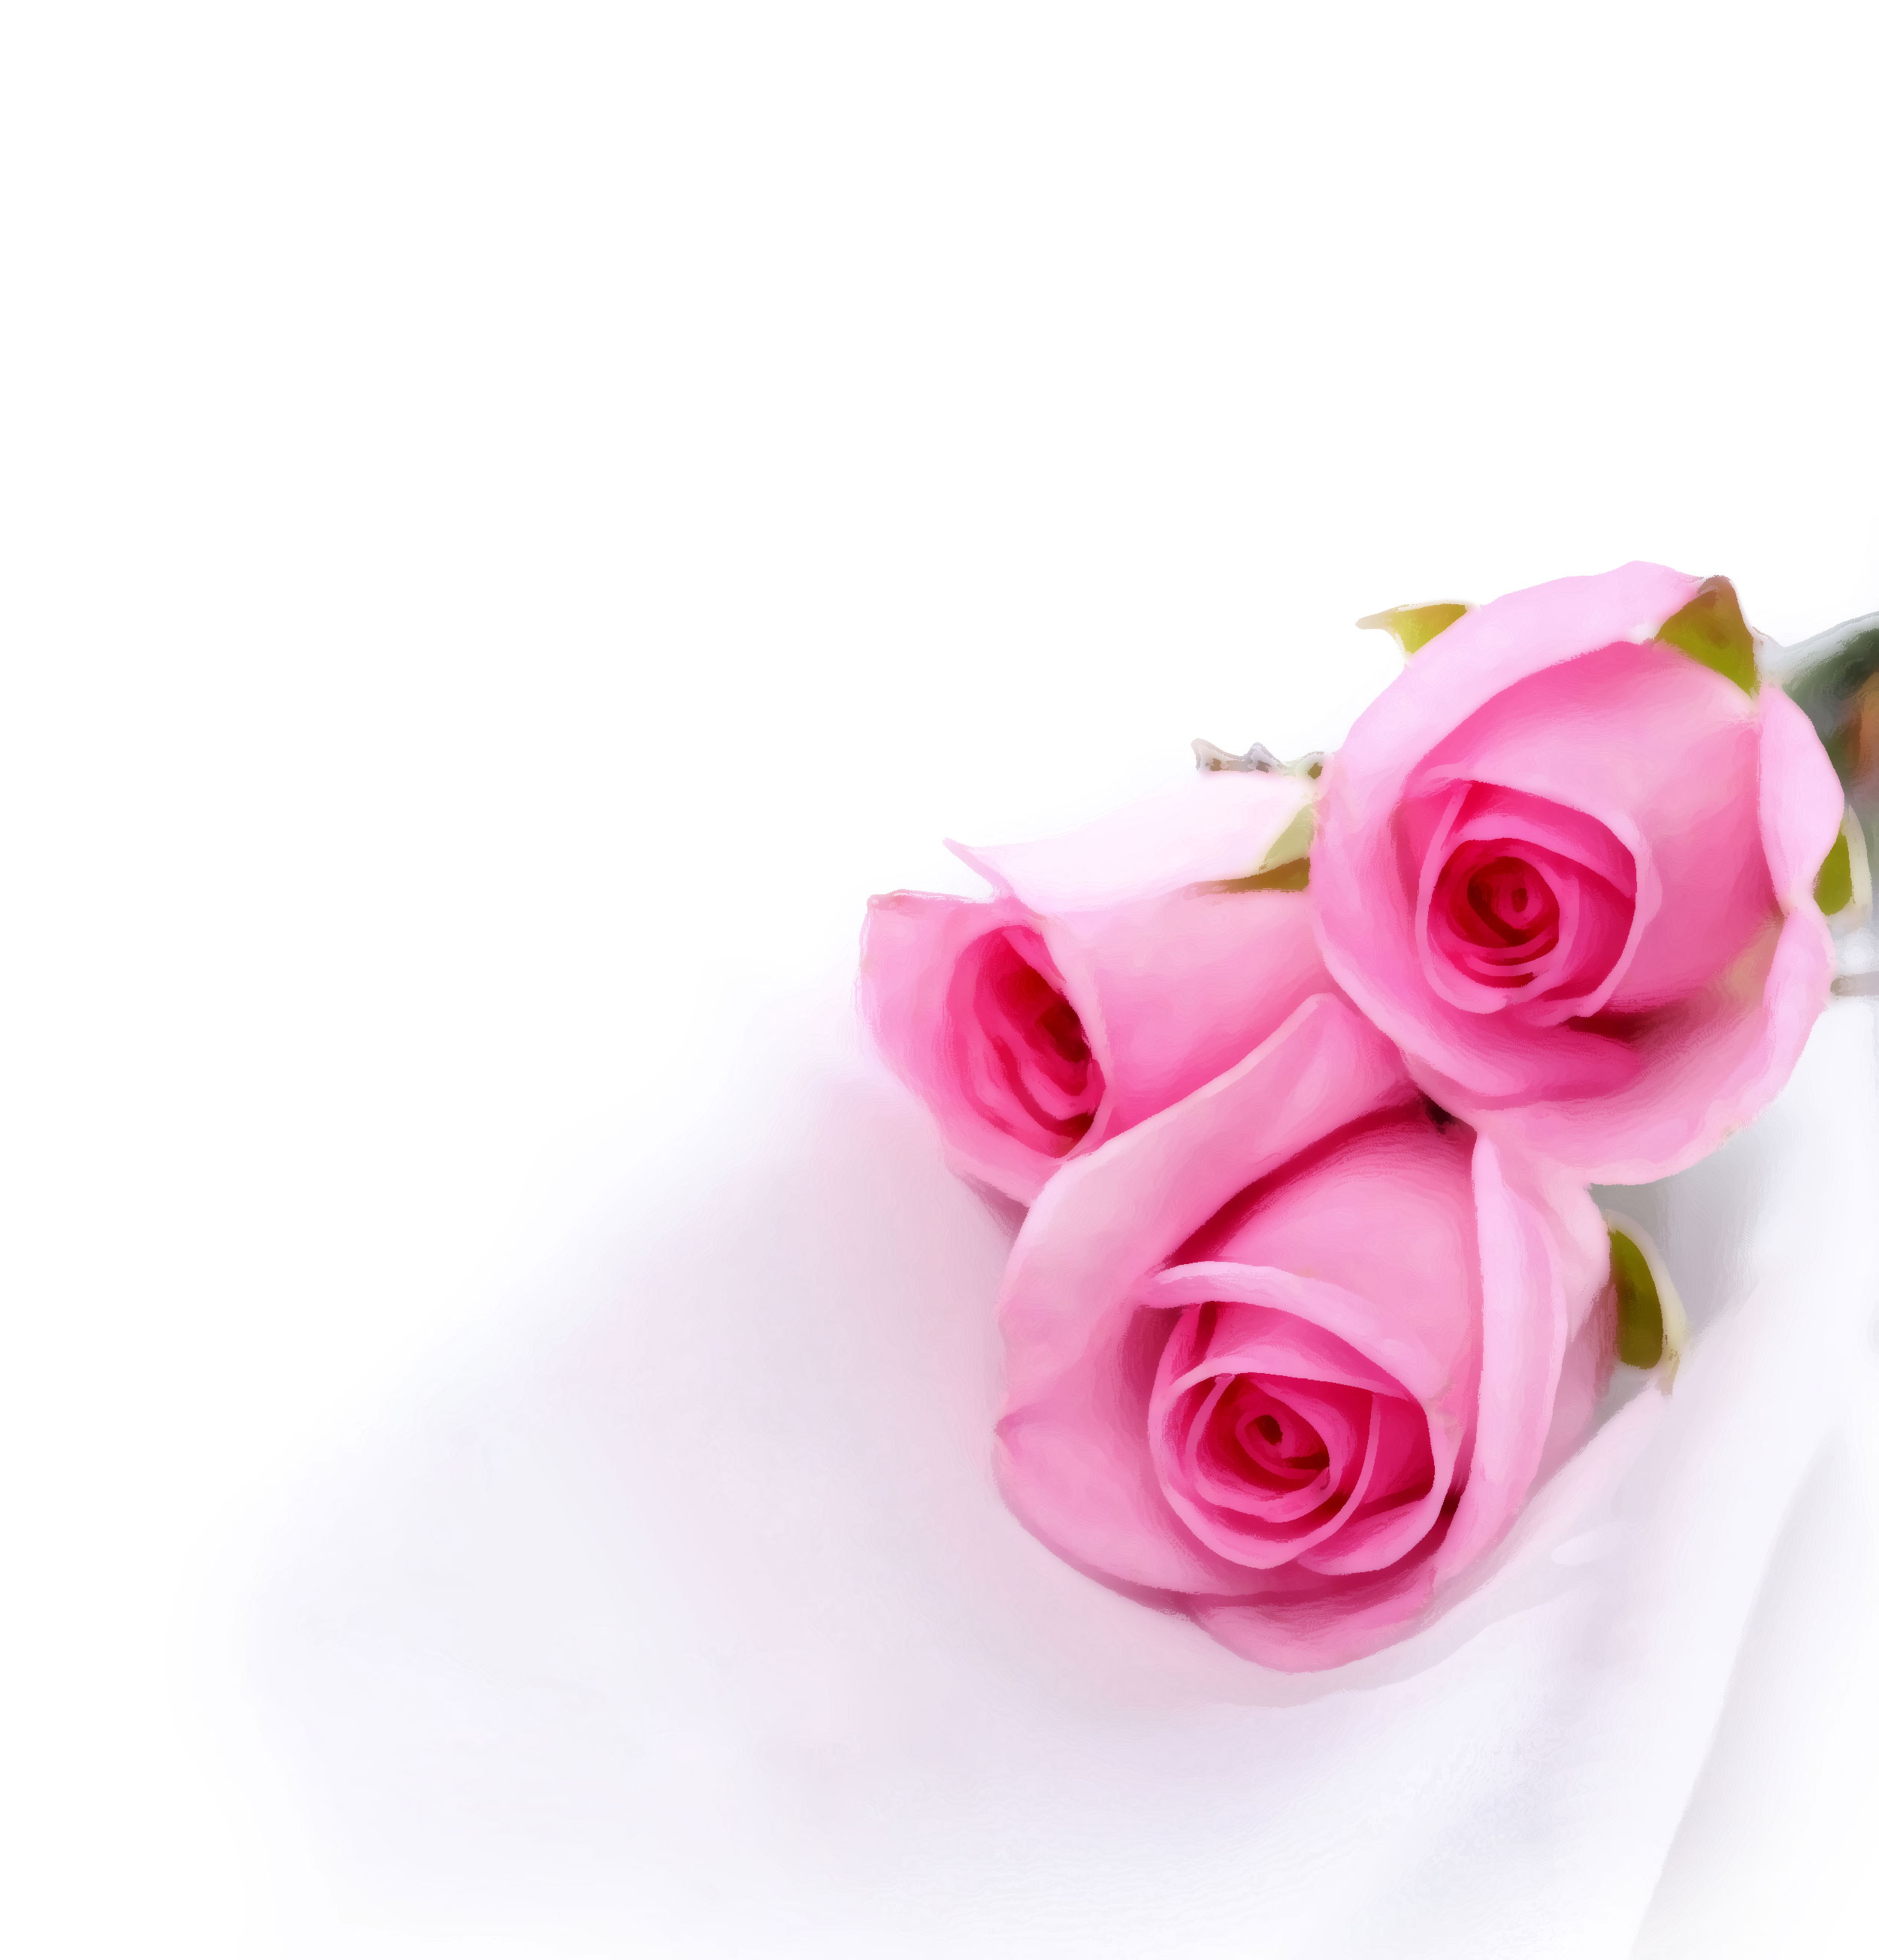 花のイラスト フリー素材 壁紙 背景no 401 ピンクのバラ三輪